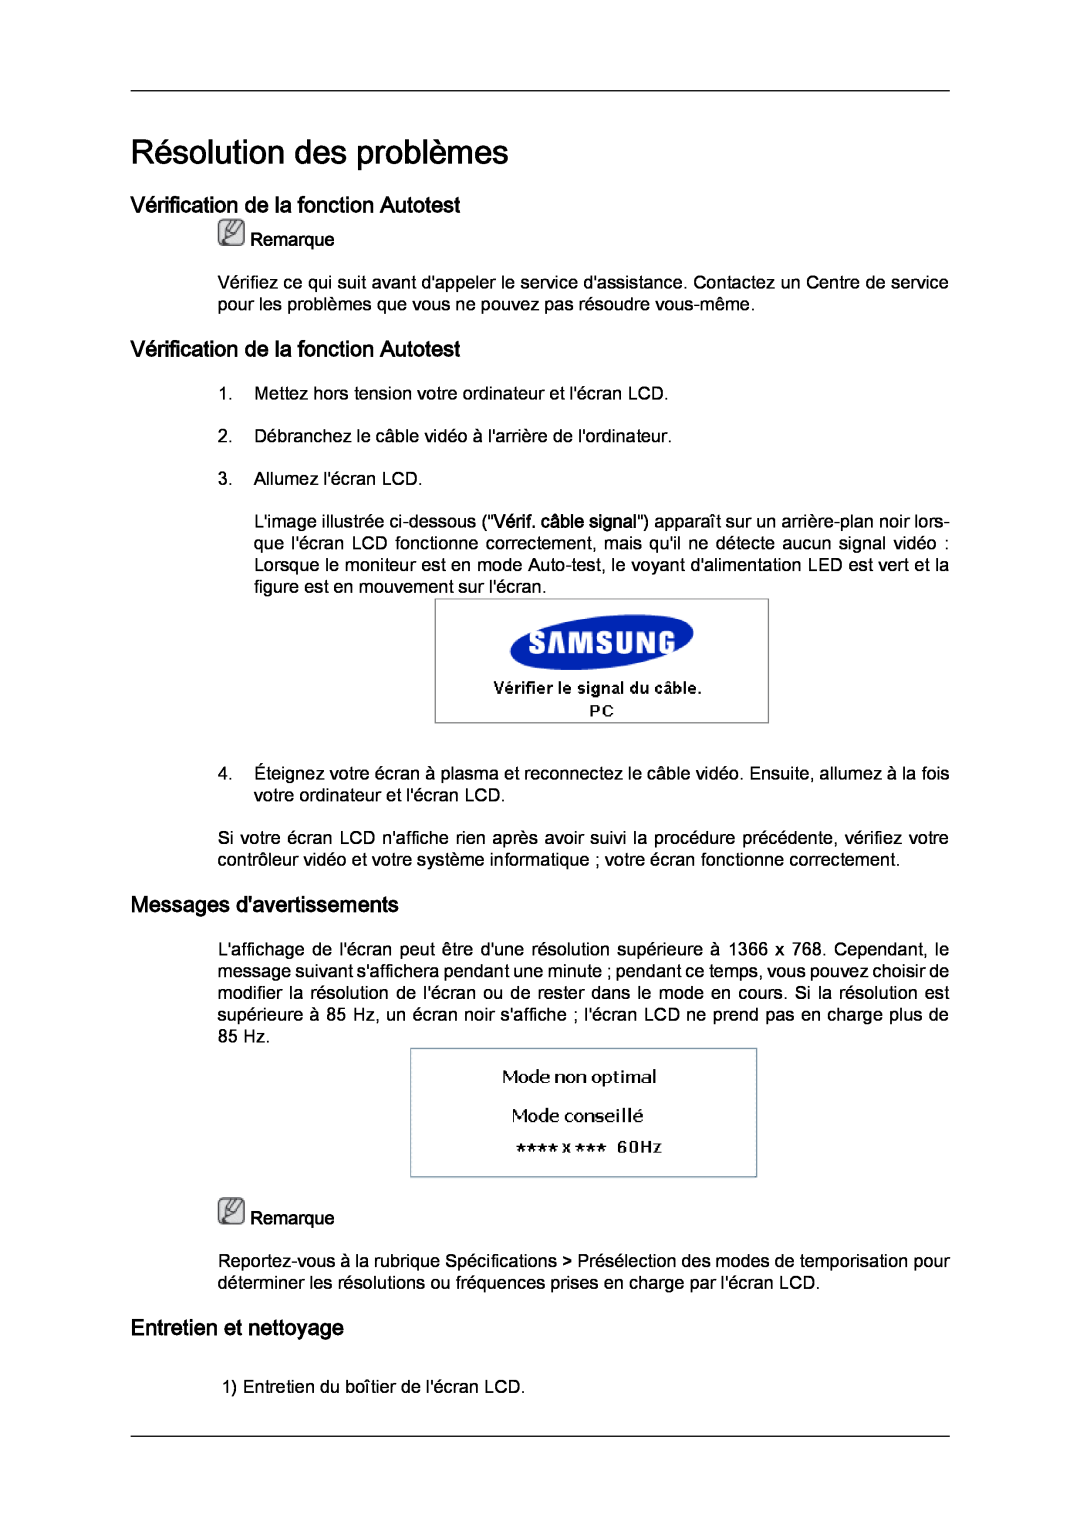 Samsung 460UTN Résolution des problèmes, Vérification de la fonction Autotest, Messages davertissements, Remarque 